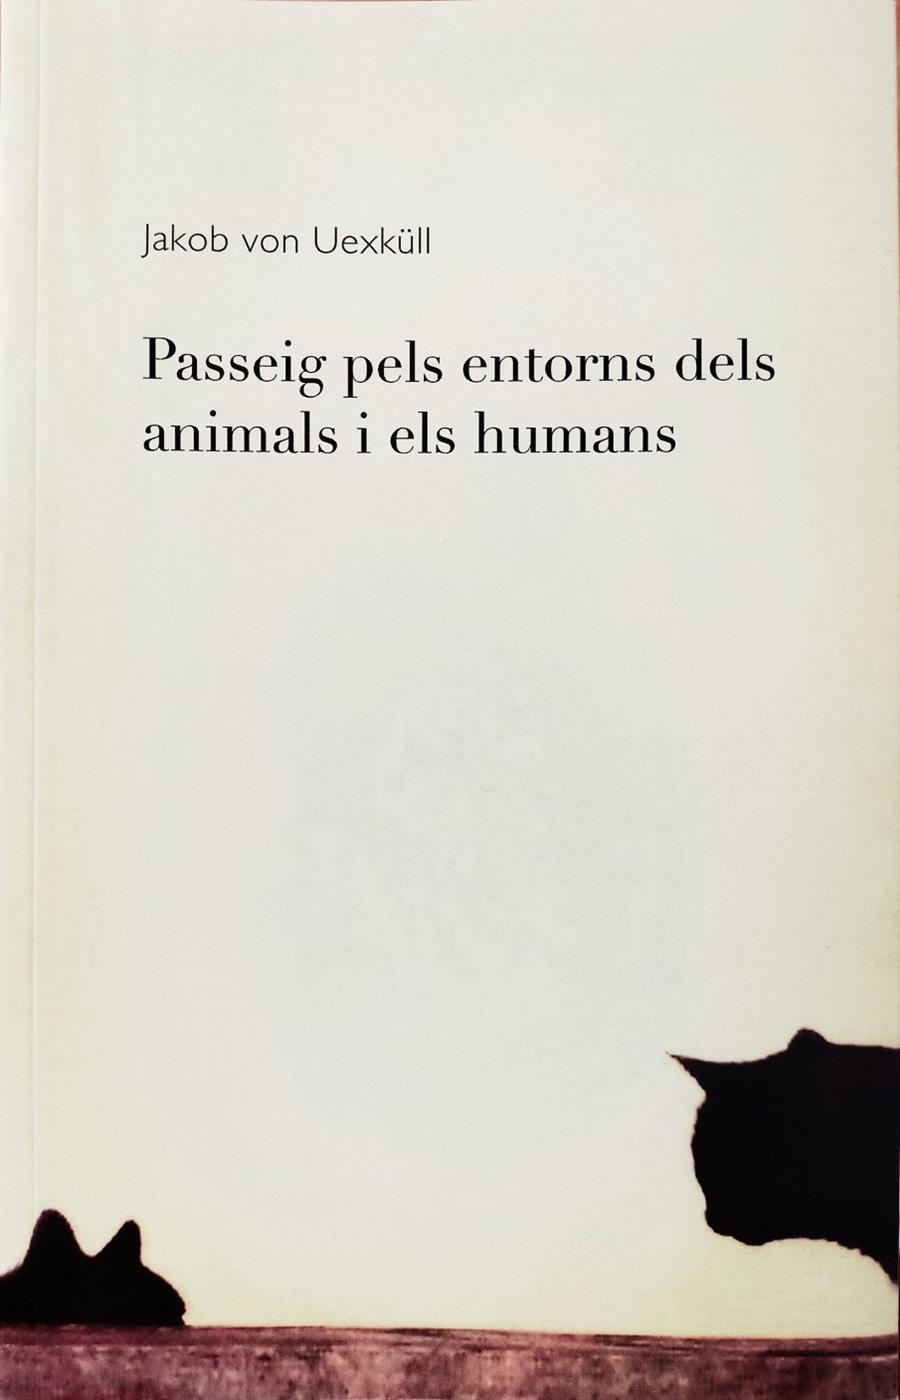 Passeig pels entorns dels animals i els humans | von Uexküll, Jakob | Cooperativa autogestionària